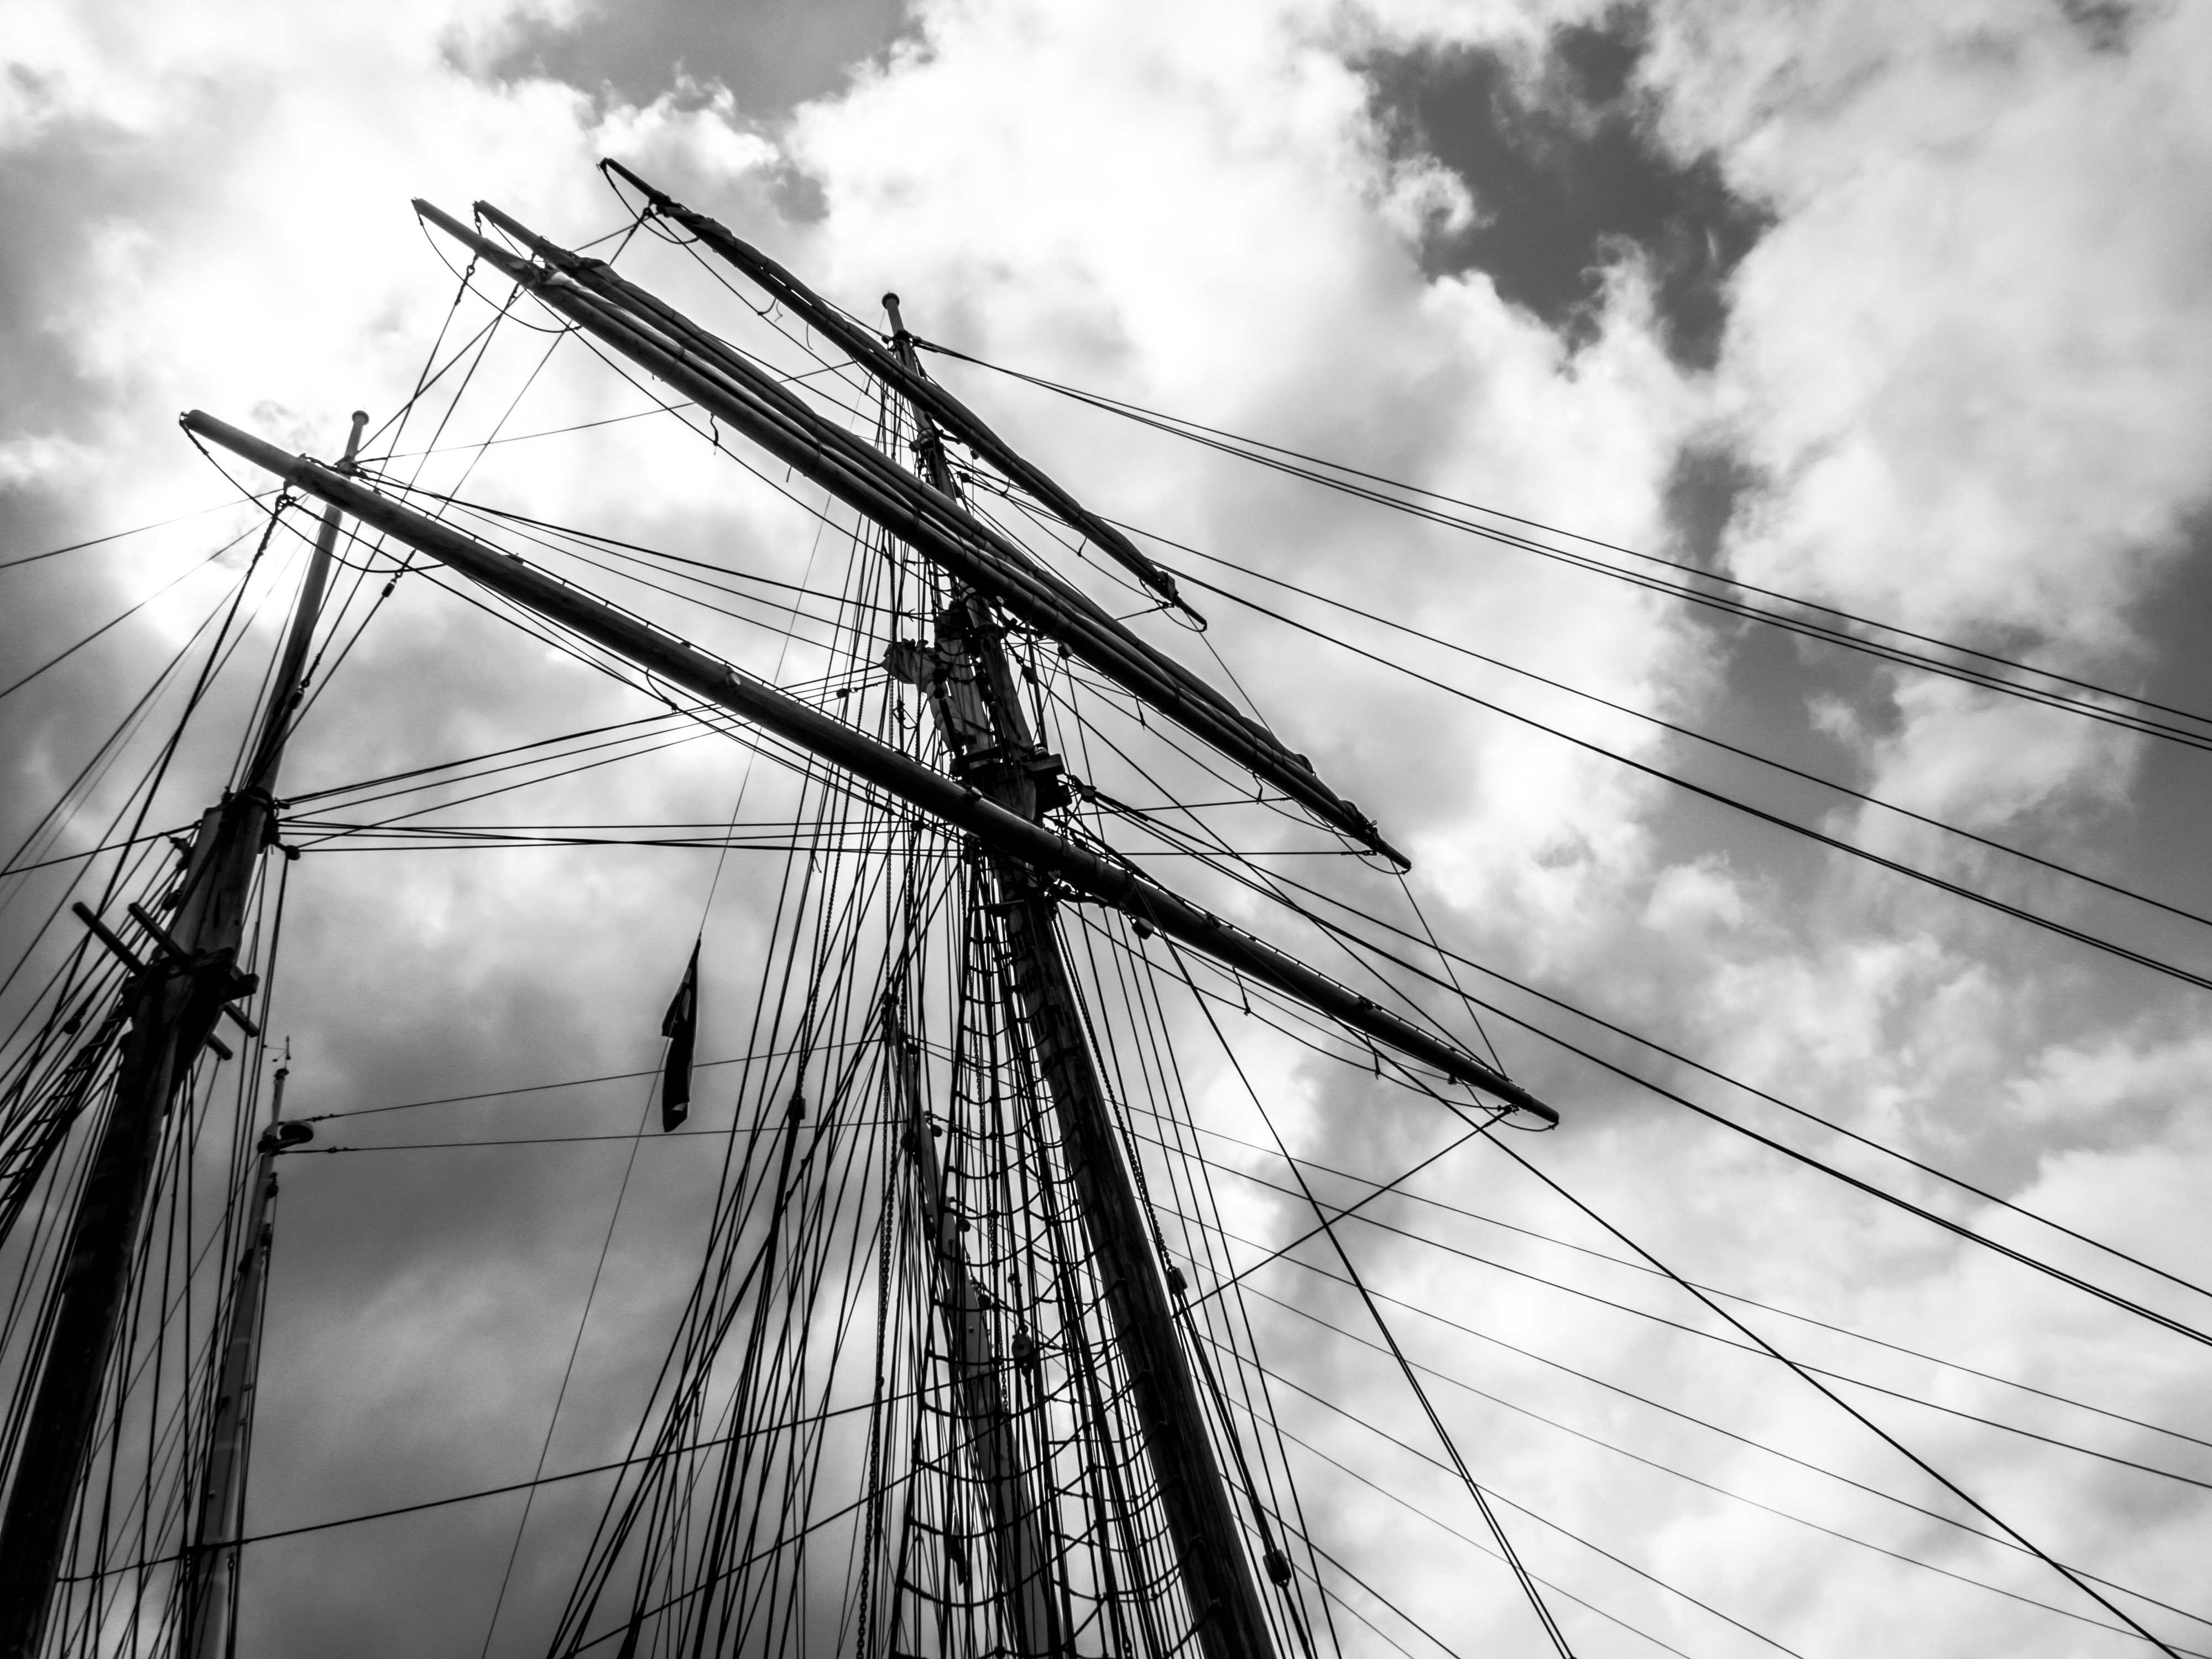 Sailing ship's masts photo